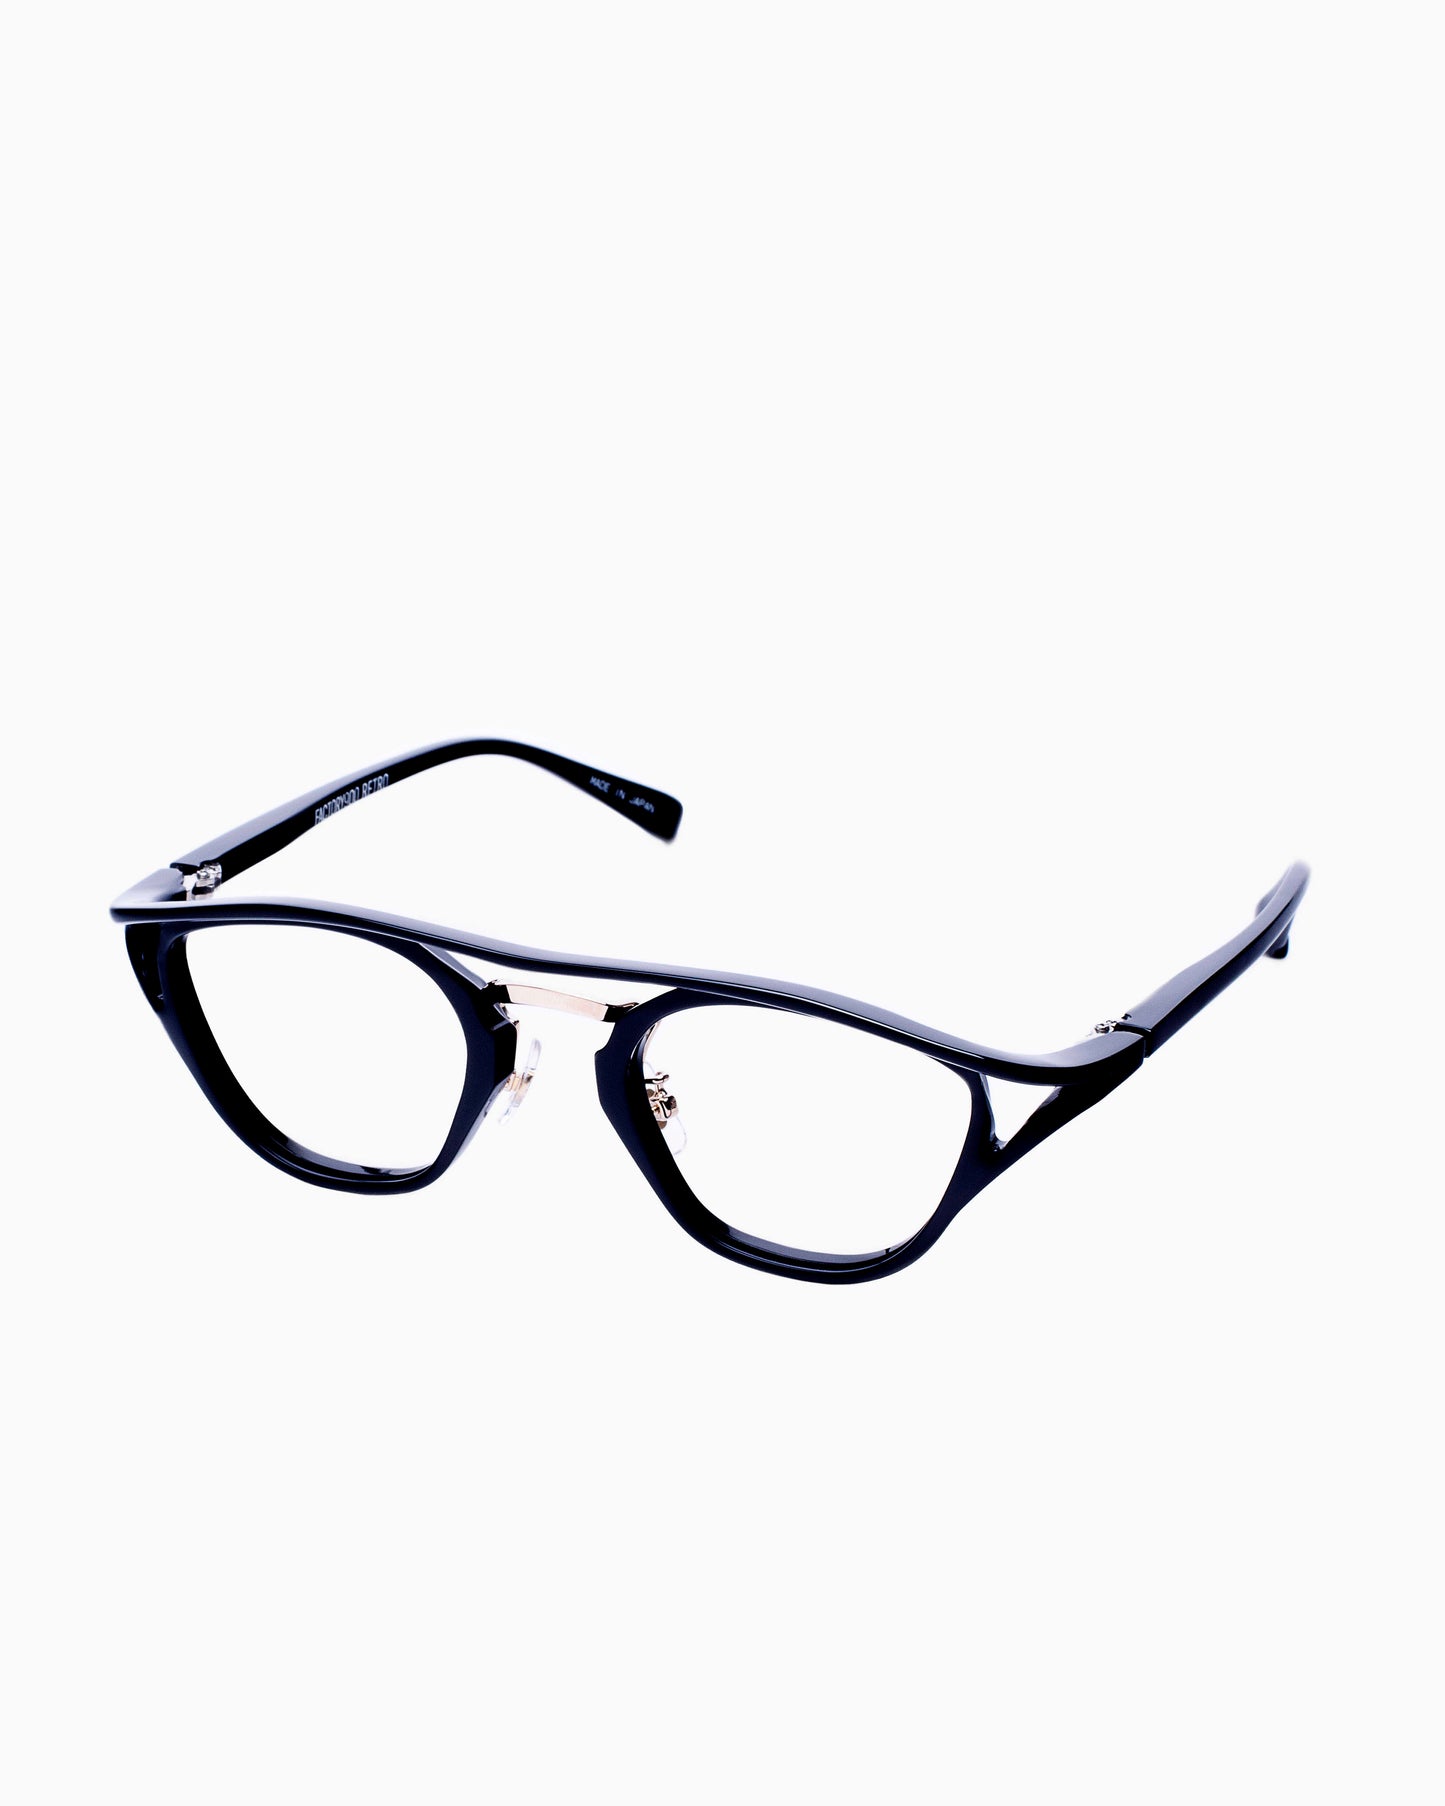 Factory 900-RF101-001 | glasses bar